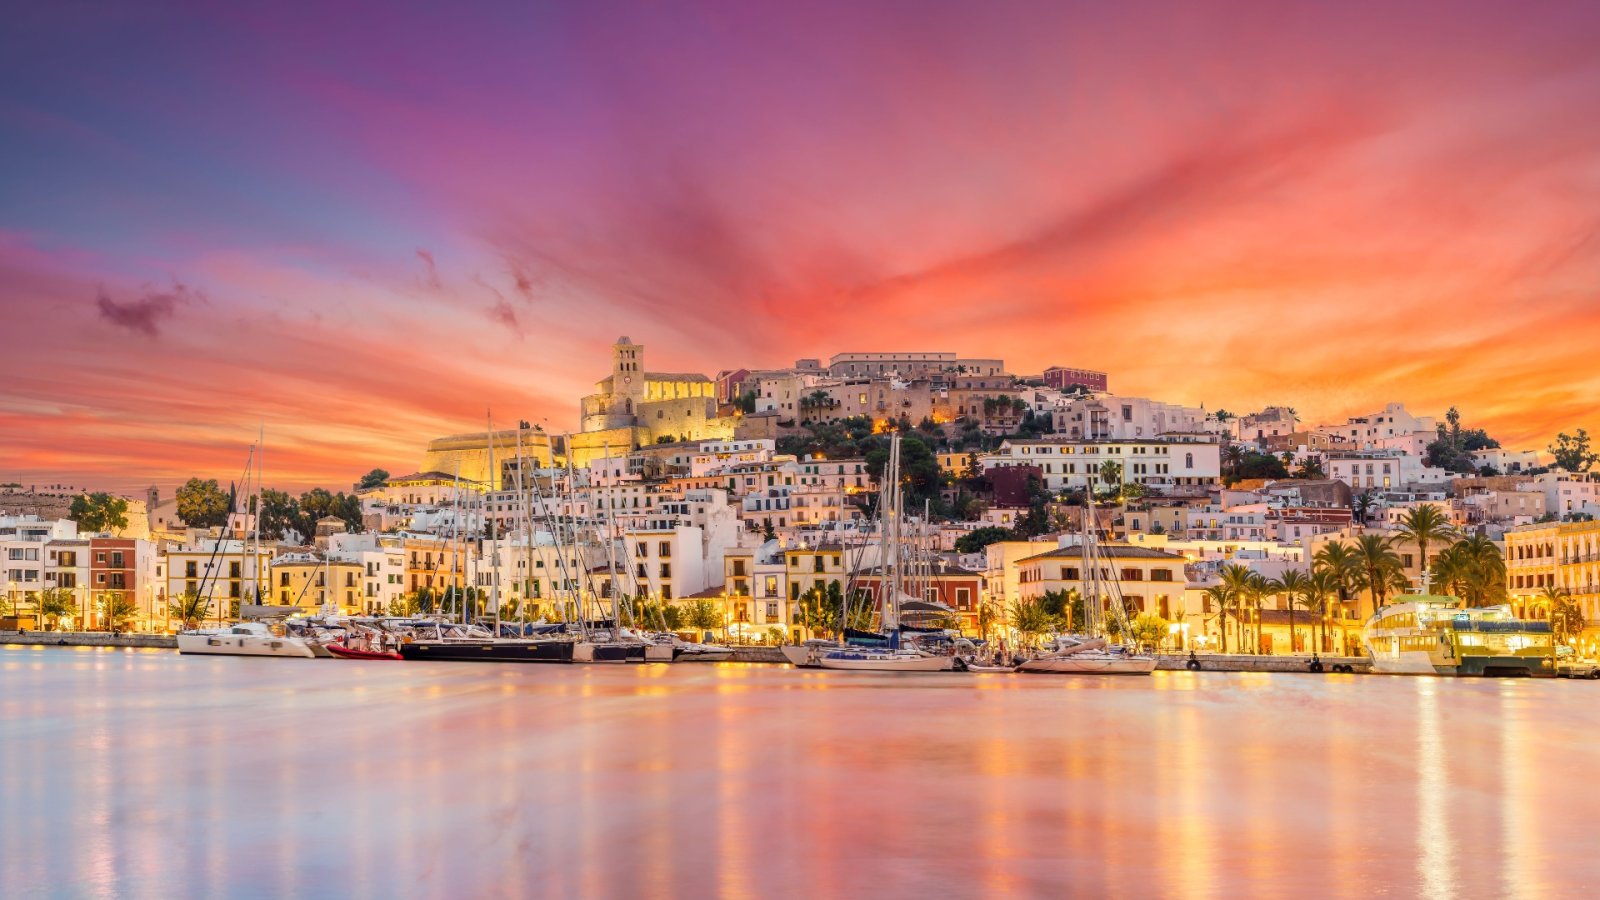 Una guida turistica nella parte sconosciuta della magica Ibiza: la tua prossima destinazione